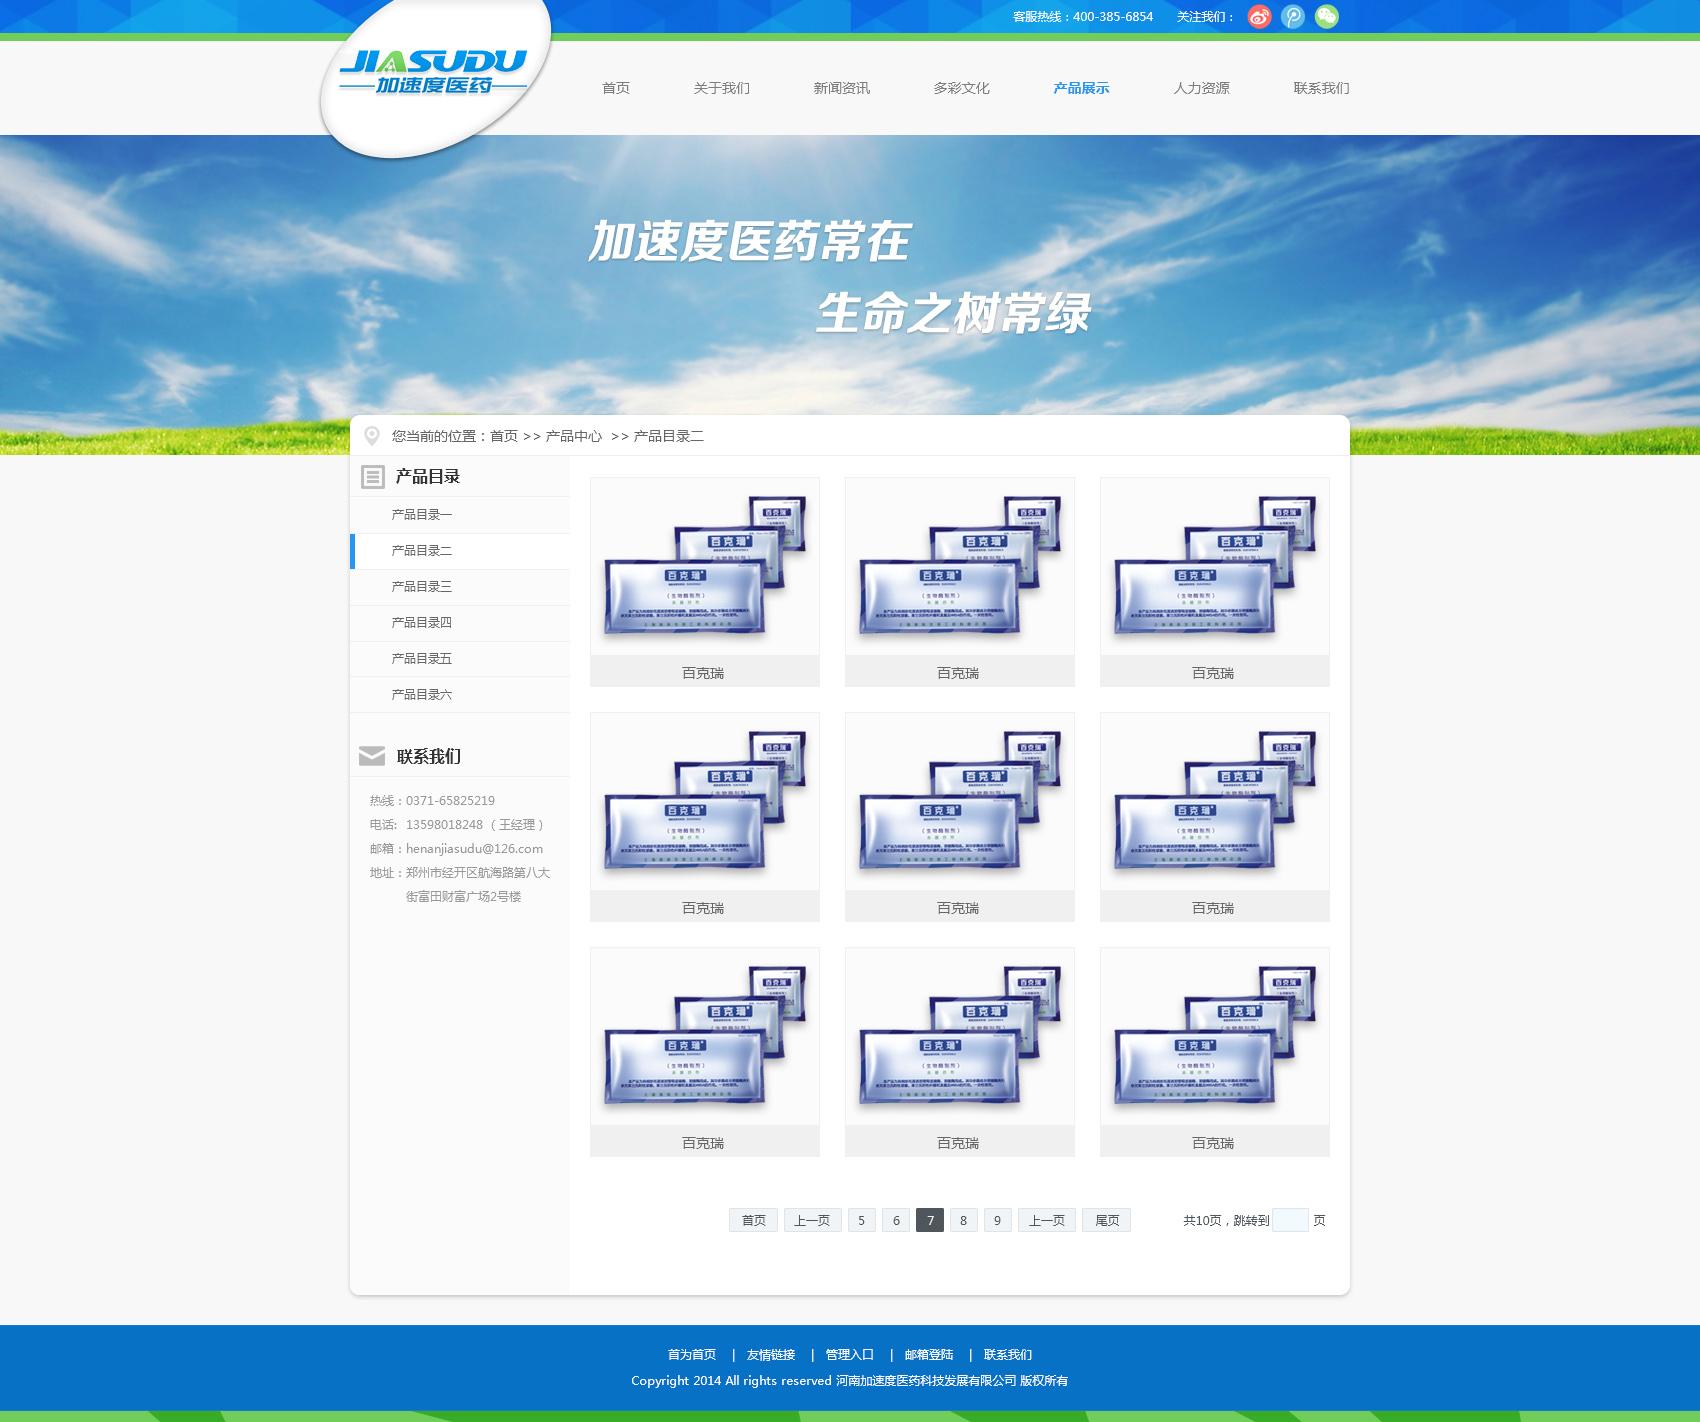 河南加速度医药公司网站设计首页效果图